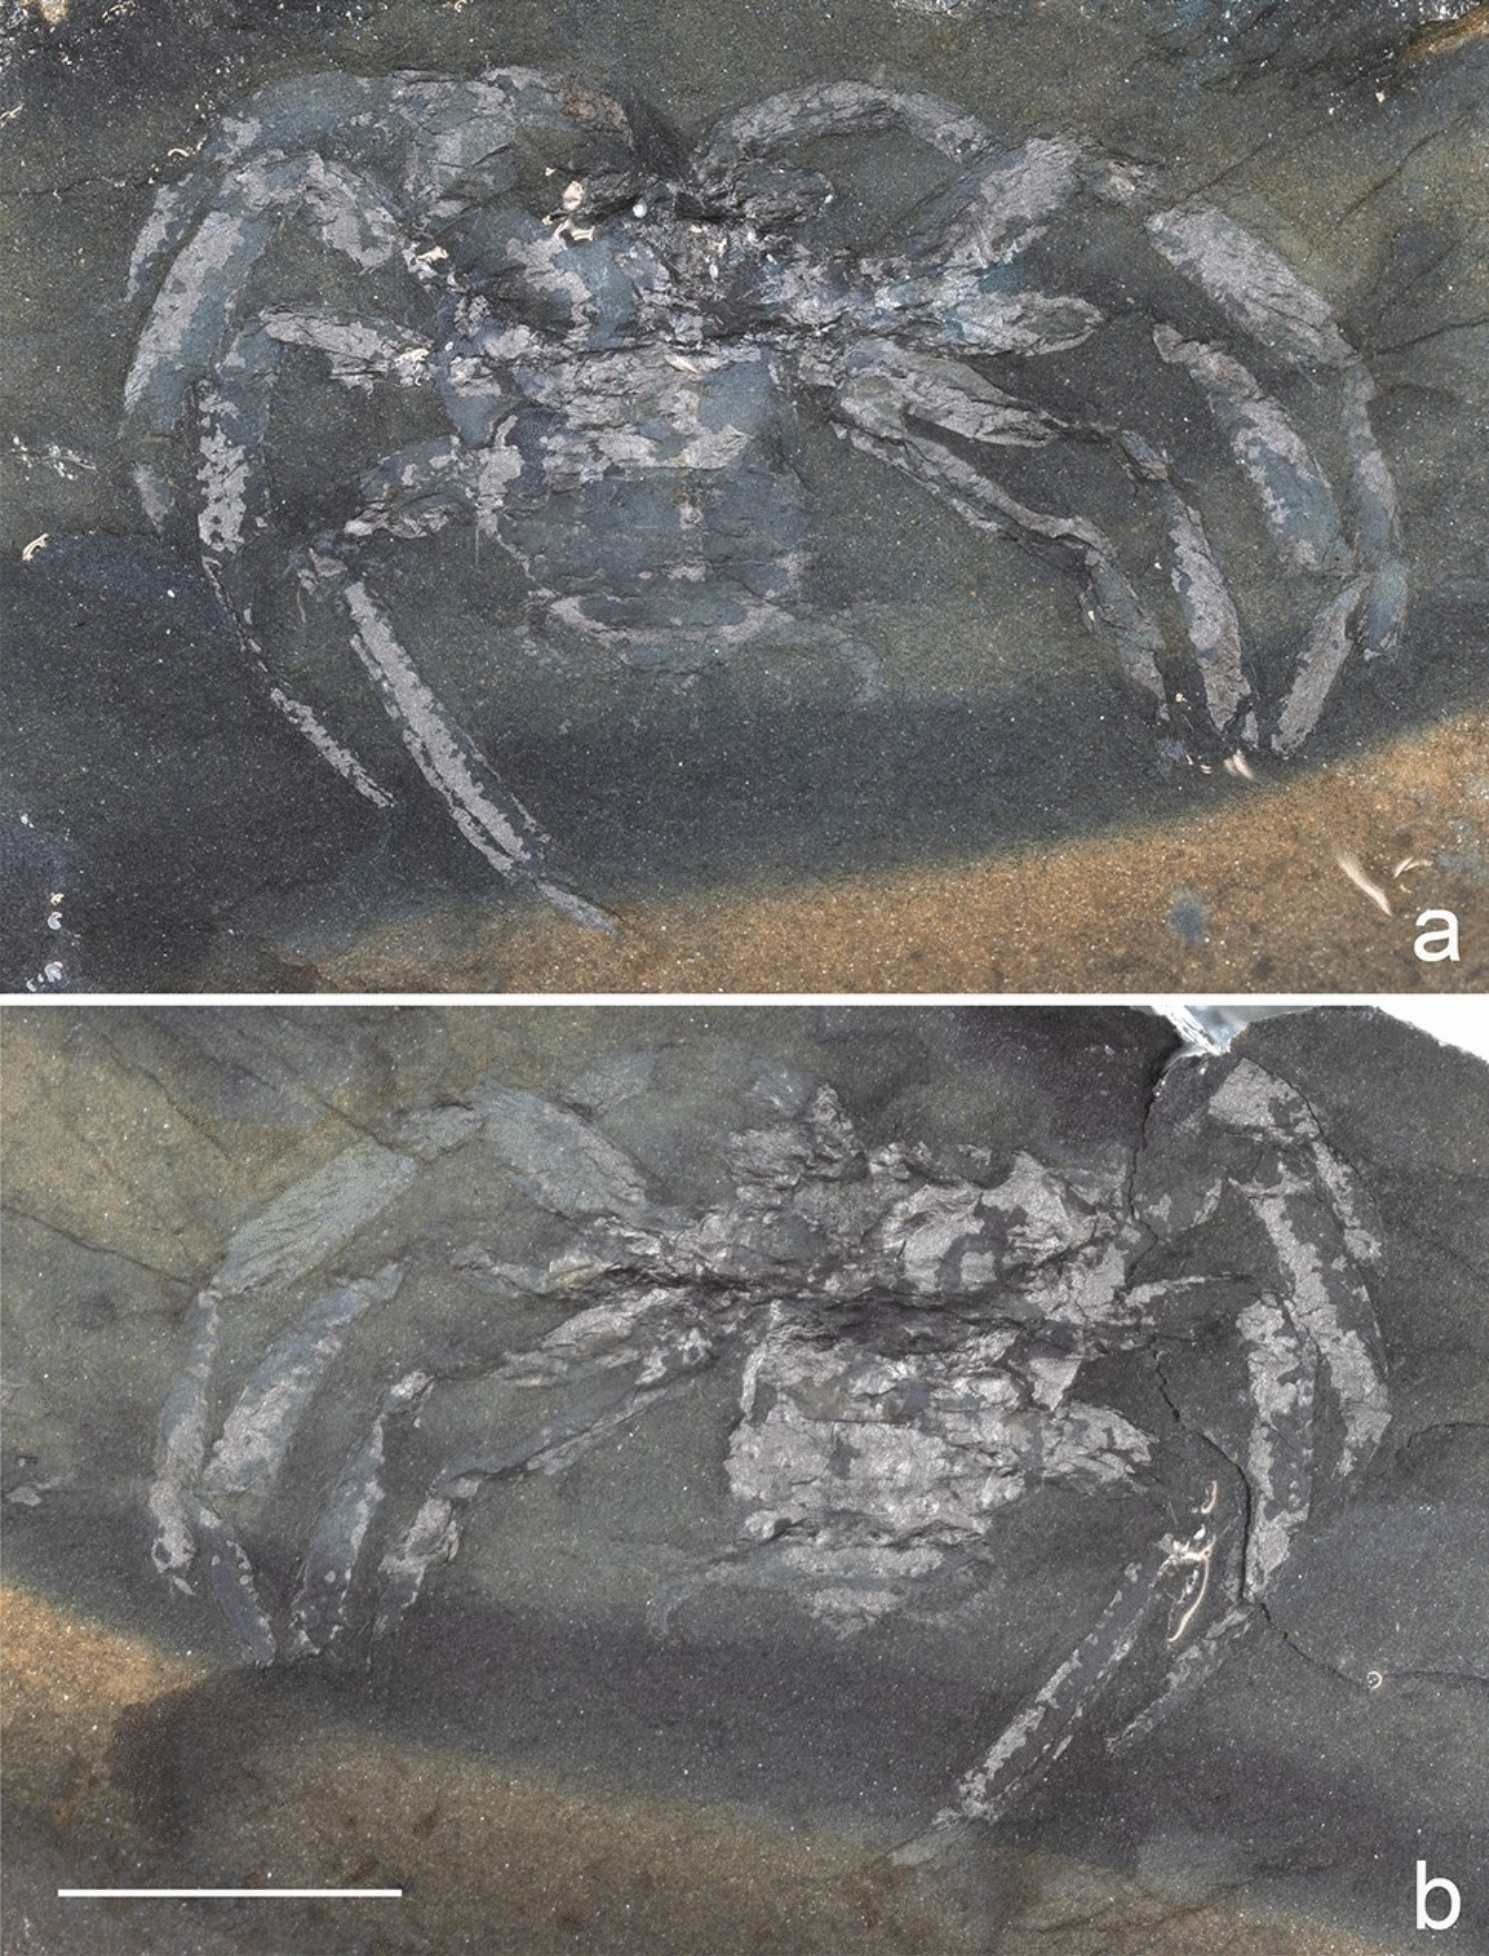 Arthrolycosa wolterbeeki sp. nov., il più antico ragno fossile (Arachnida: Araneae) dalla Germania, dal tardo Carbonifero di Piesberg vicino a Osnabruck, Bassa Sassonia.